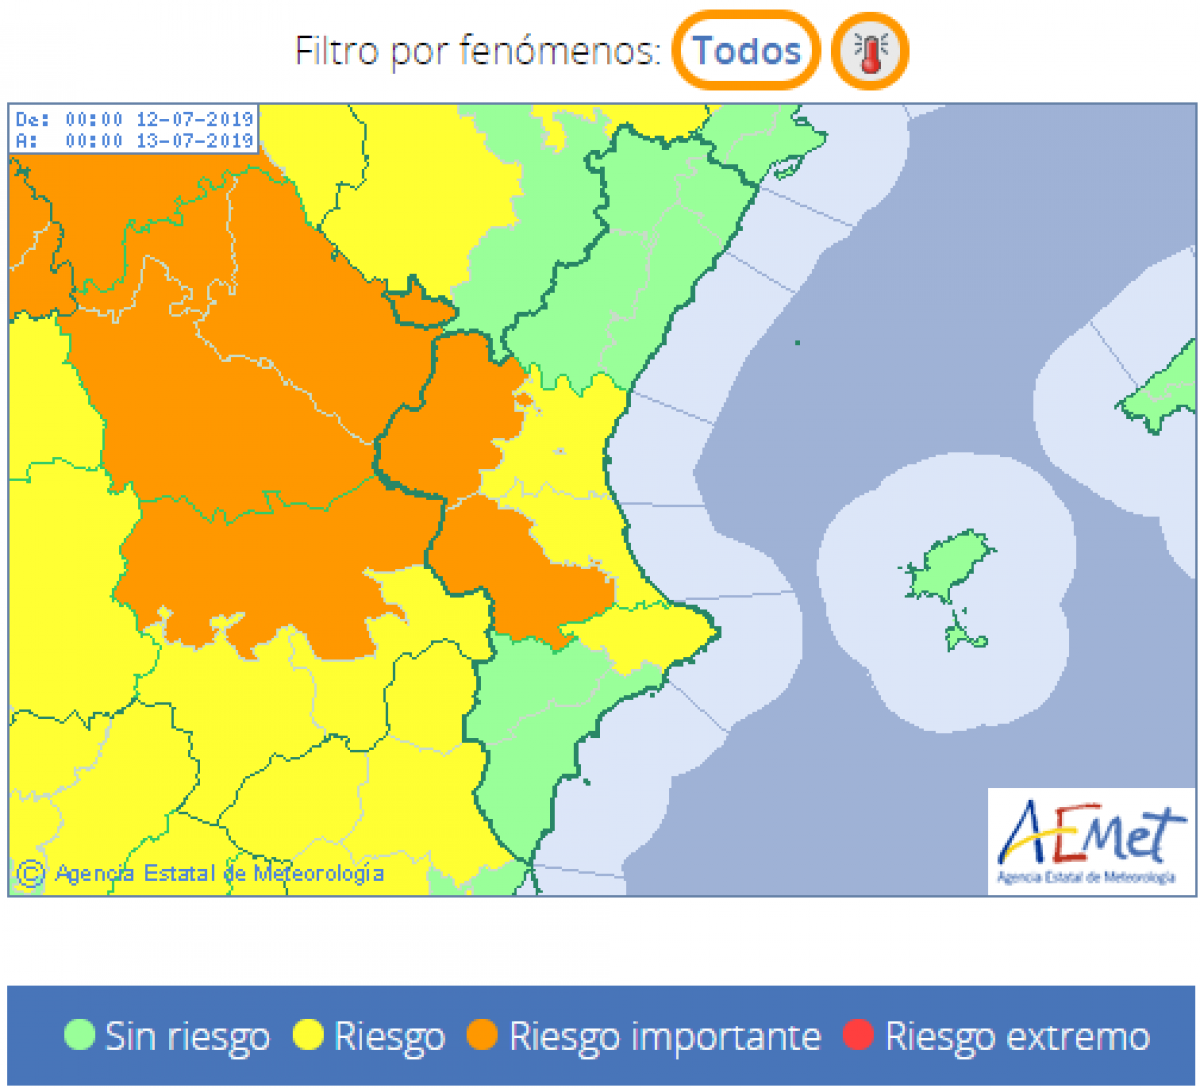 Sâhan activat avisos per calor extrema a algunes zones, sobretot de lâinterior valenciÃ , amb valors que poden assolir els 40Âº el divendres